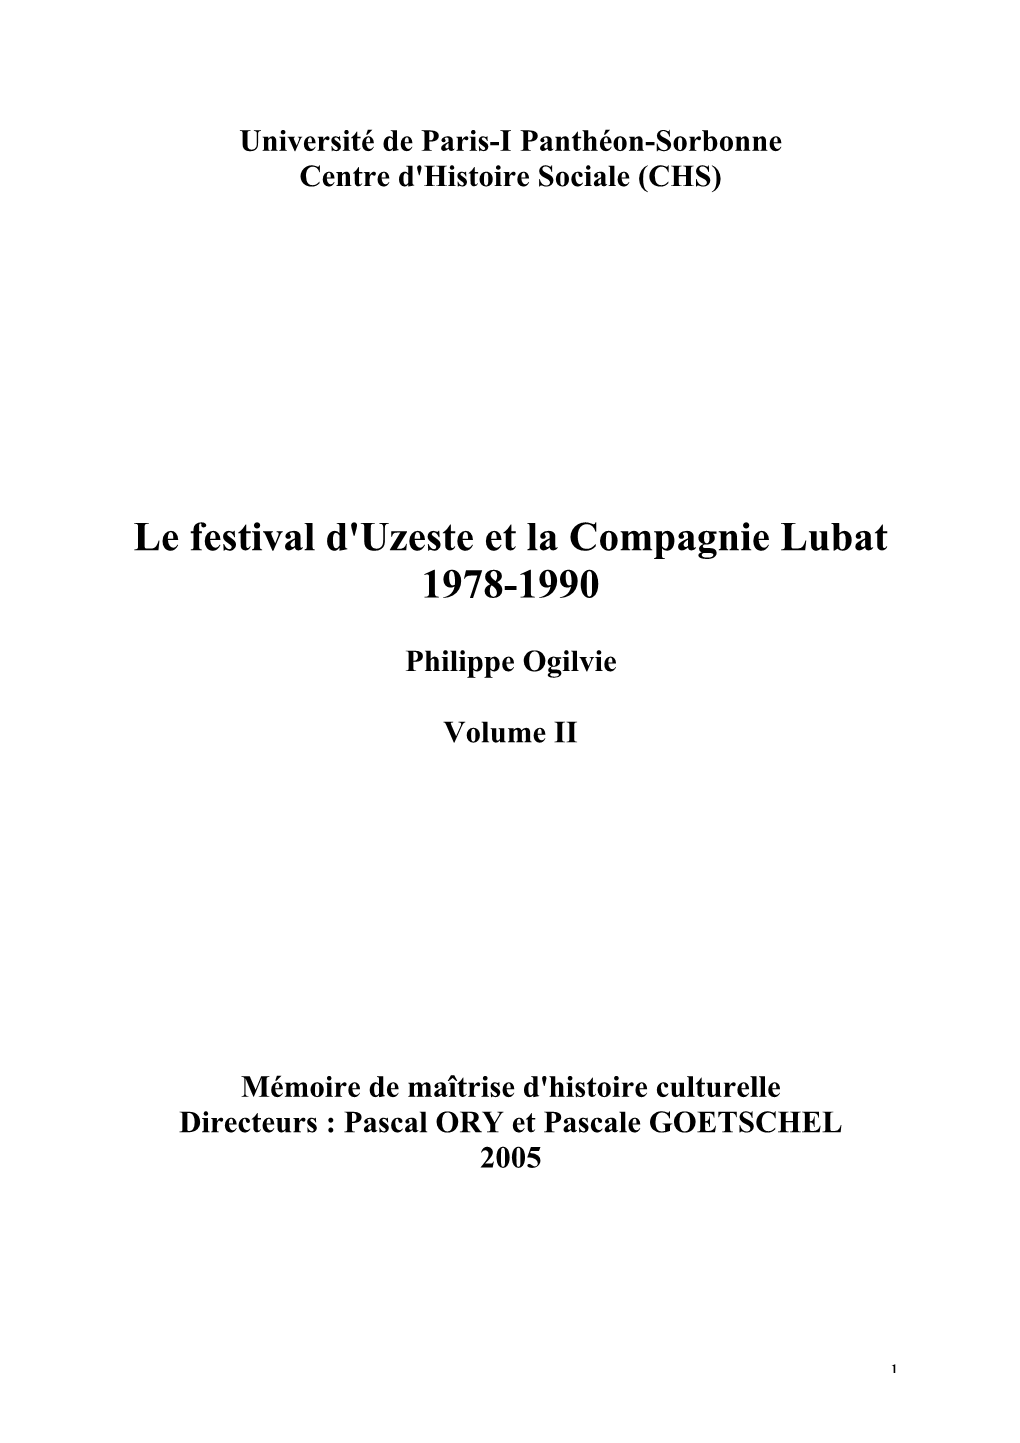 Le Festival D'uzeste Et La Compagnie Lubat 1978-1990